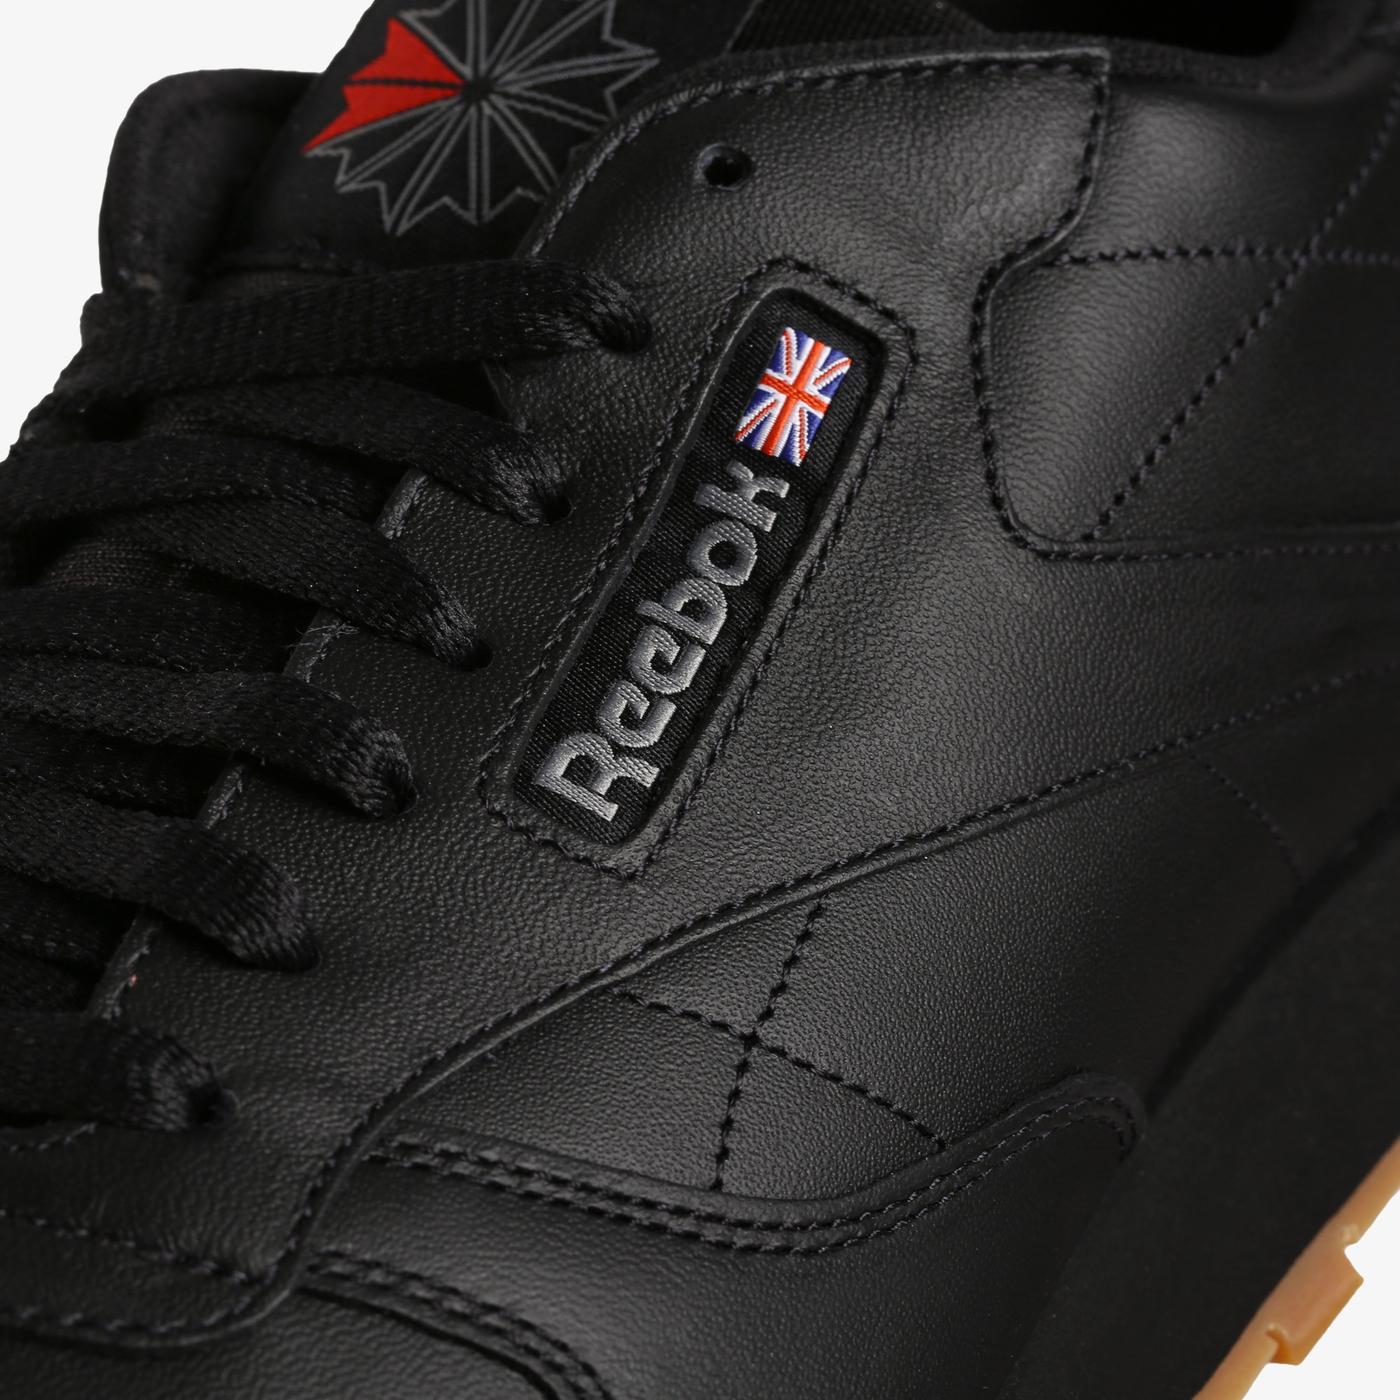 Reebok Classic Leather Erkek Siyah Spor Ayakkabı